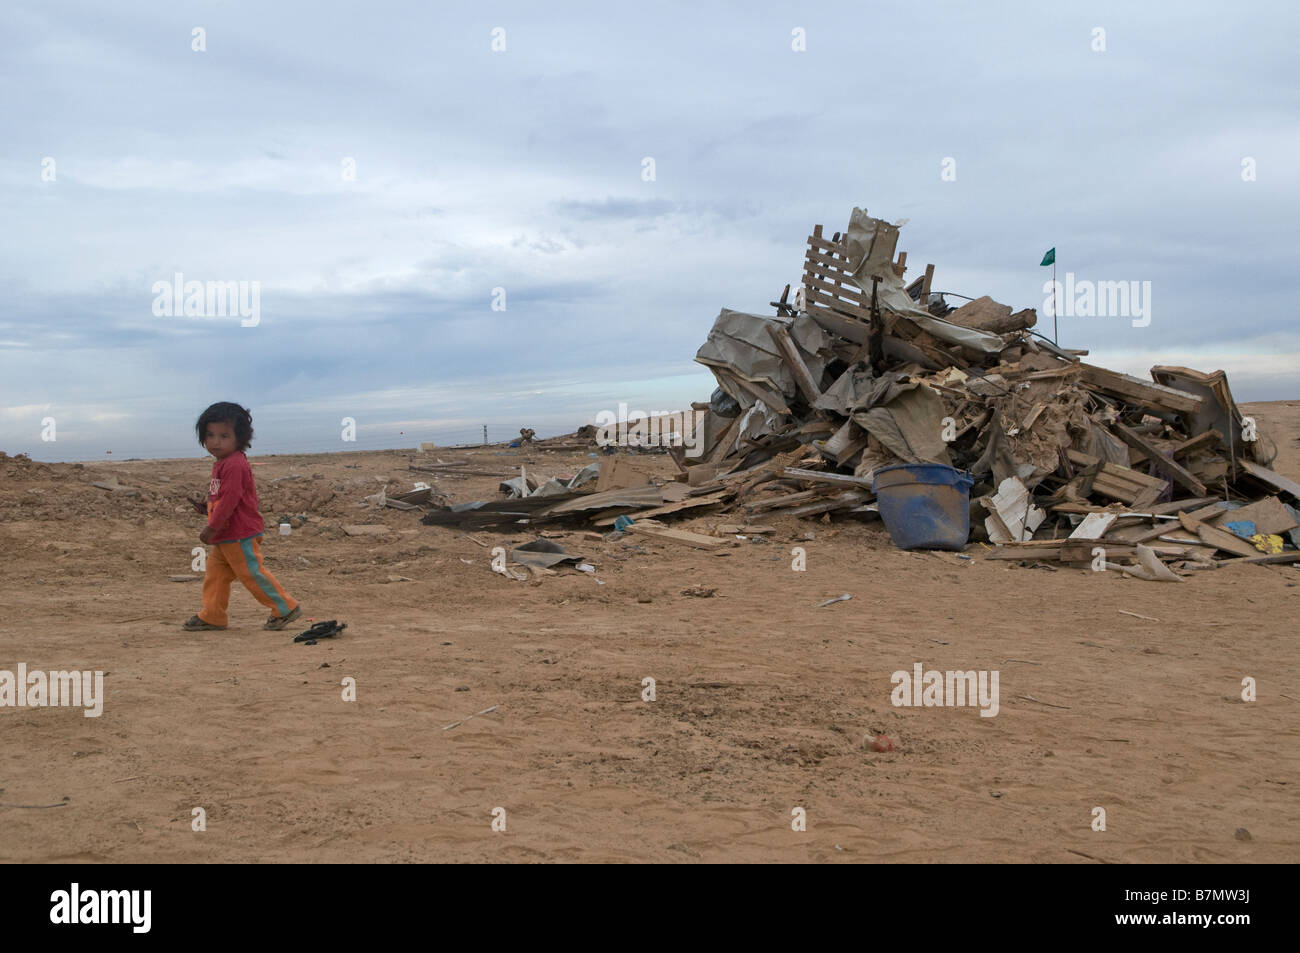 Au milieu des ruines de fille bédouine démoli la maison rasée par les autorités israéliennes à Abdallah Al Atrash village bédouin non reconnu dans le désert du Néguev, Israël Banque D'Images